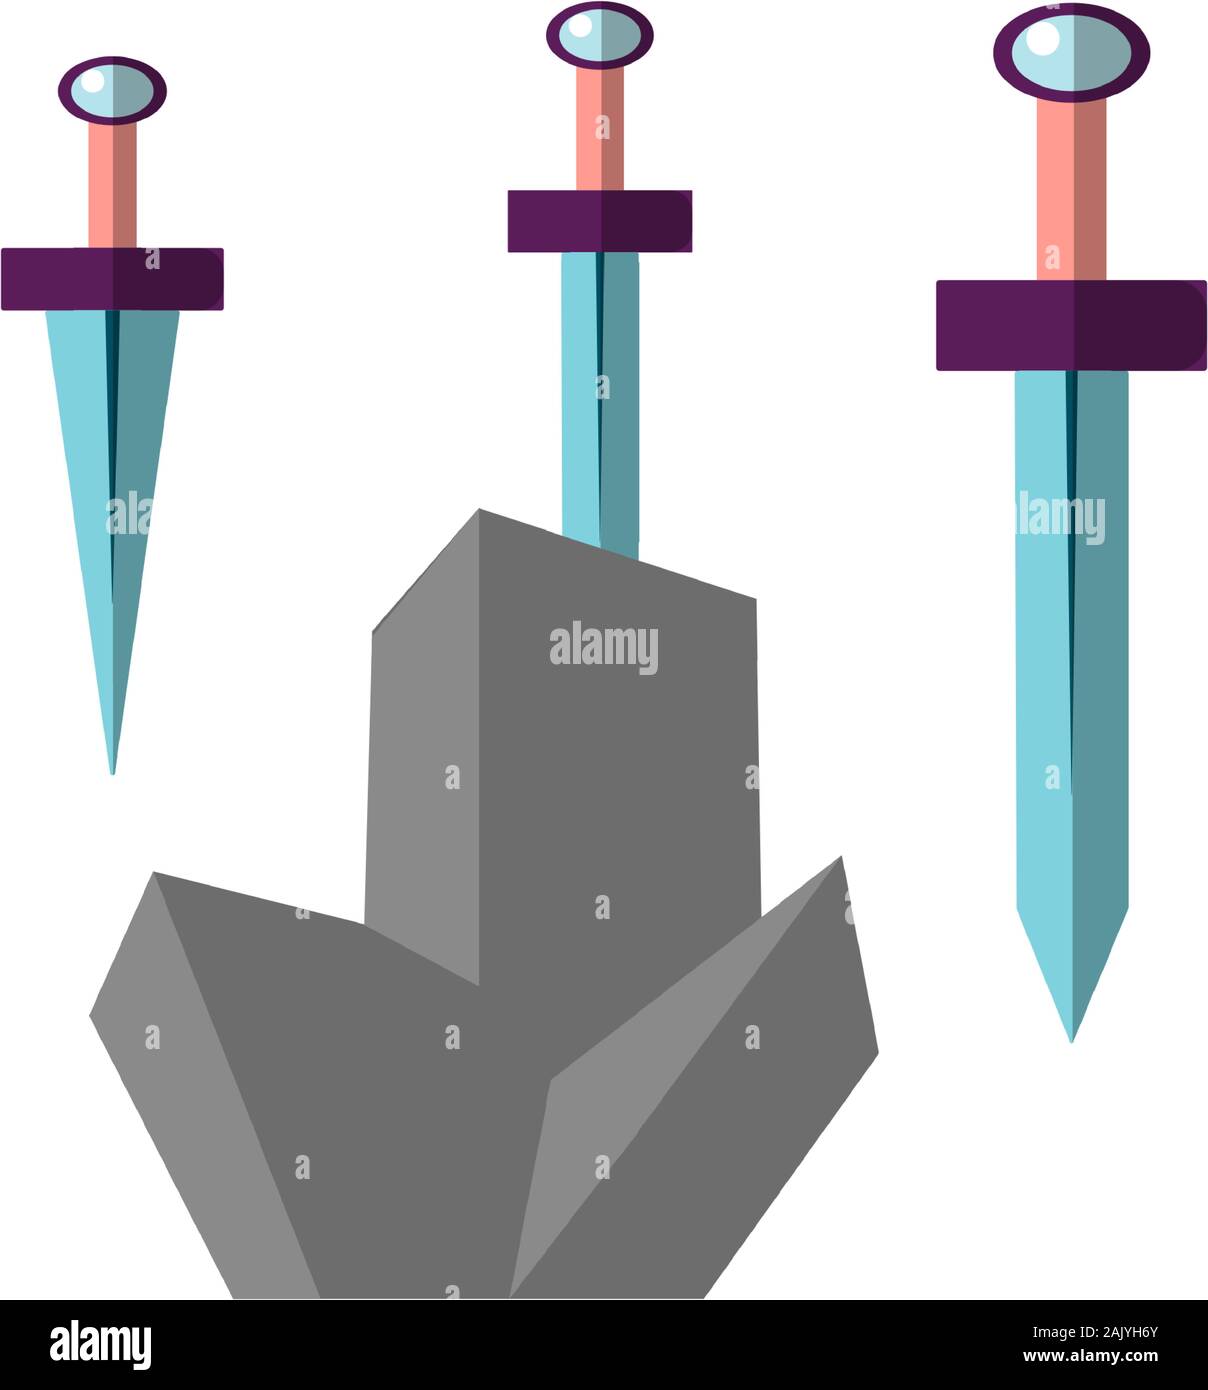 Excalibur Vektor flachbild Abbildung. Symbol des Schwertes, in grauen Stein geblieben. Kultige Szene aus der mittelalterlichen europäischen Geschichten über König Arthur. Stock Vektor